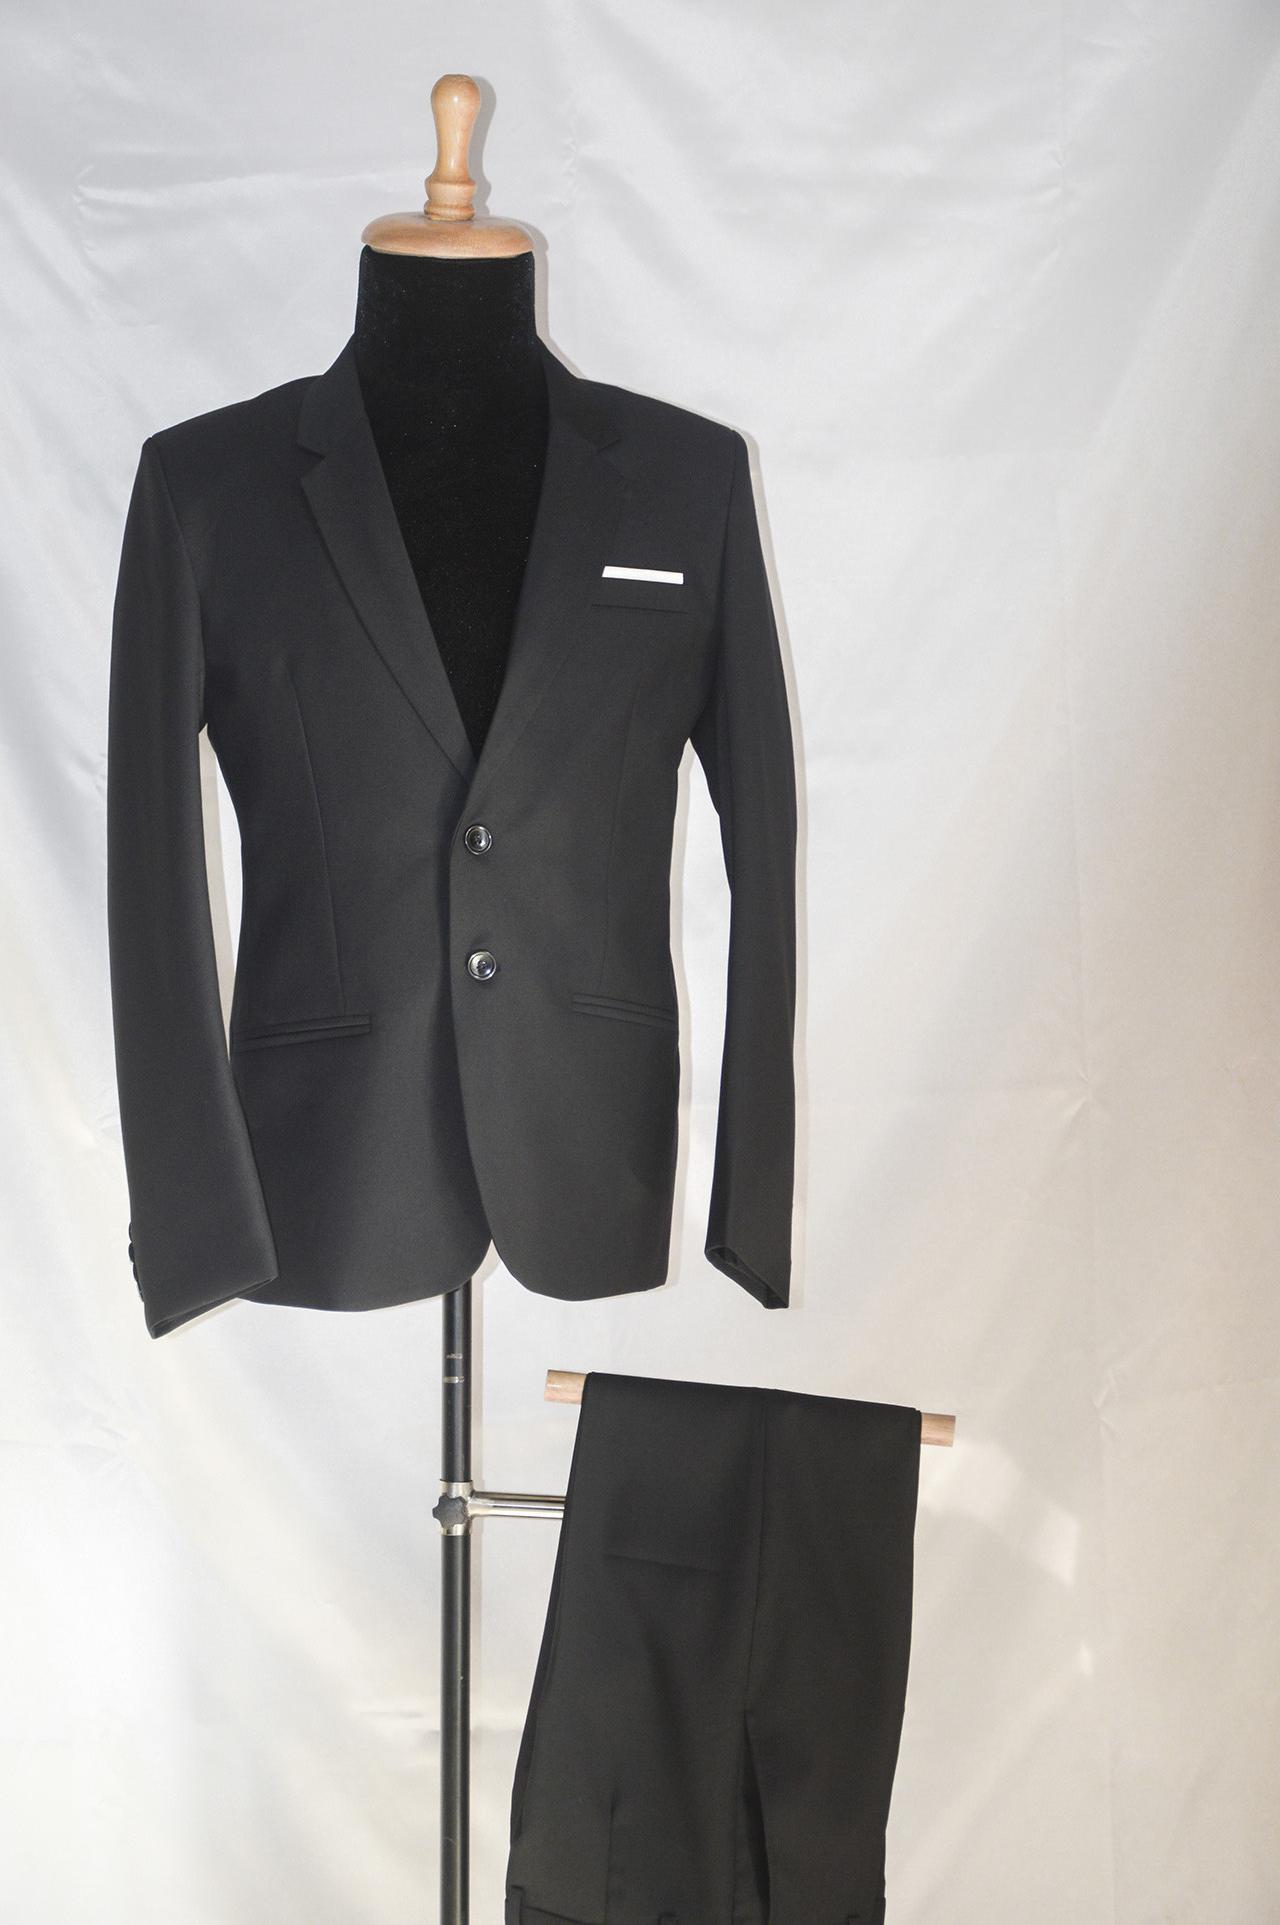 Bộ vest nam 2 nút màu đen mềm mịn tặng cà vạt kẹp